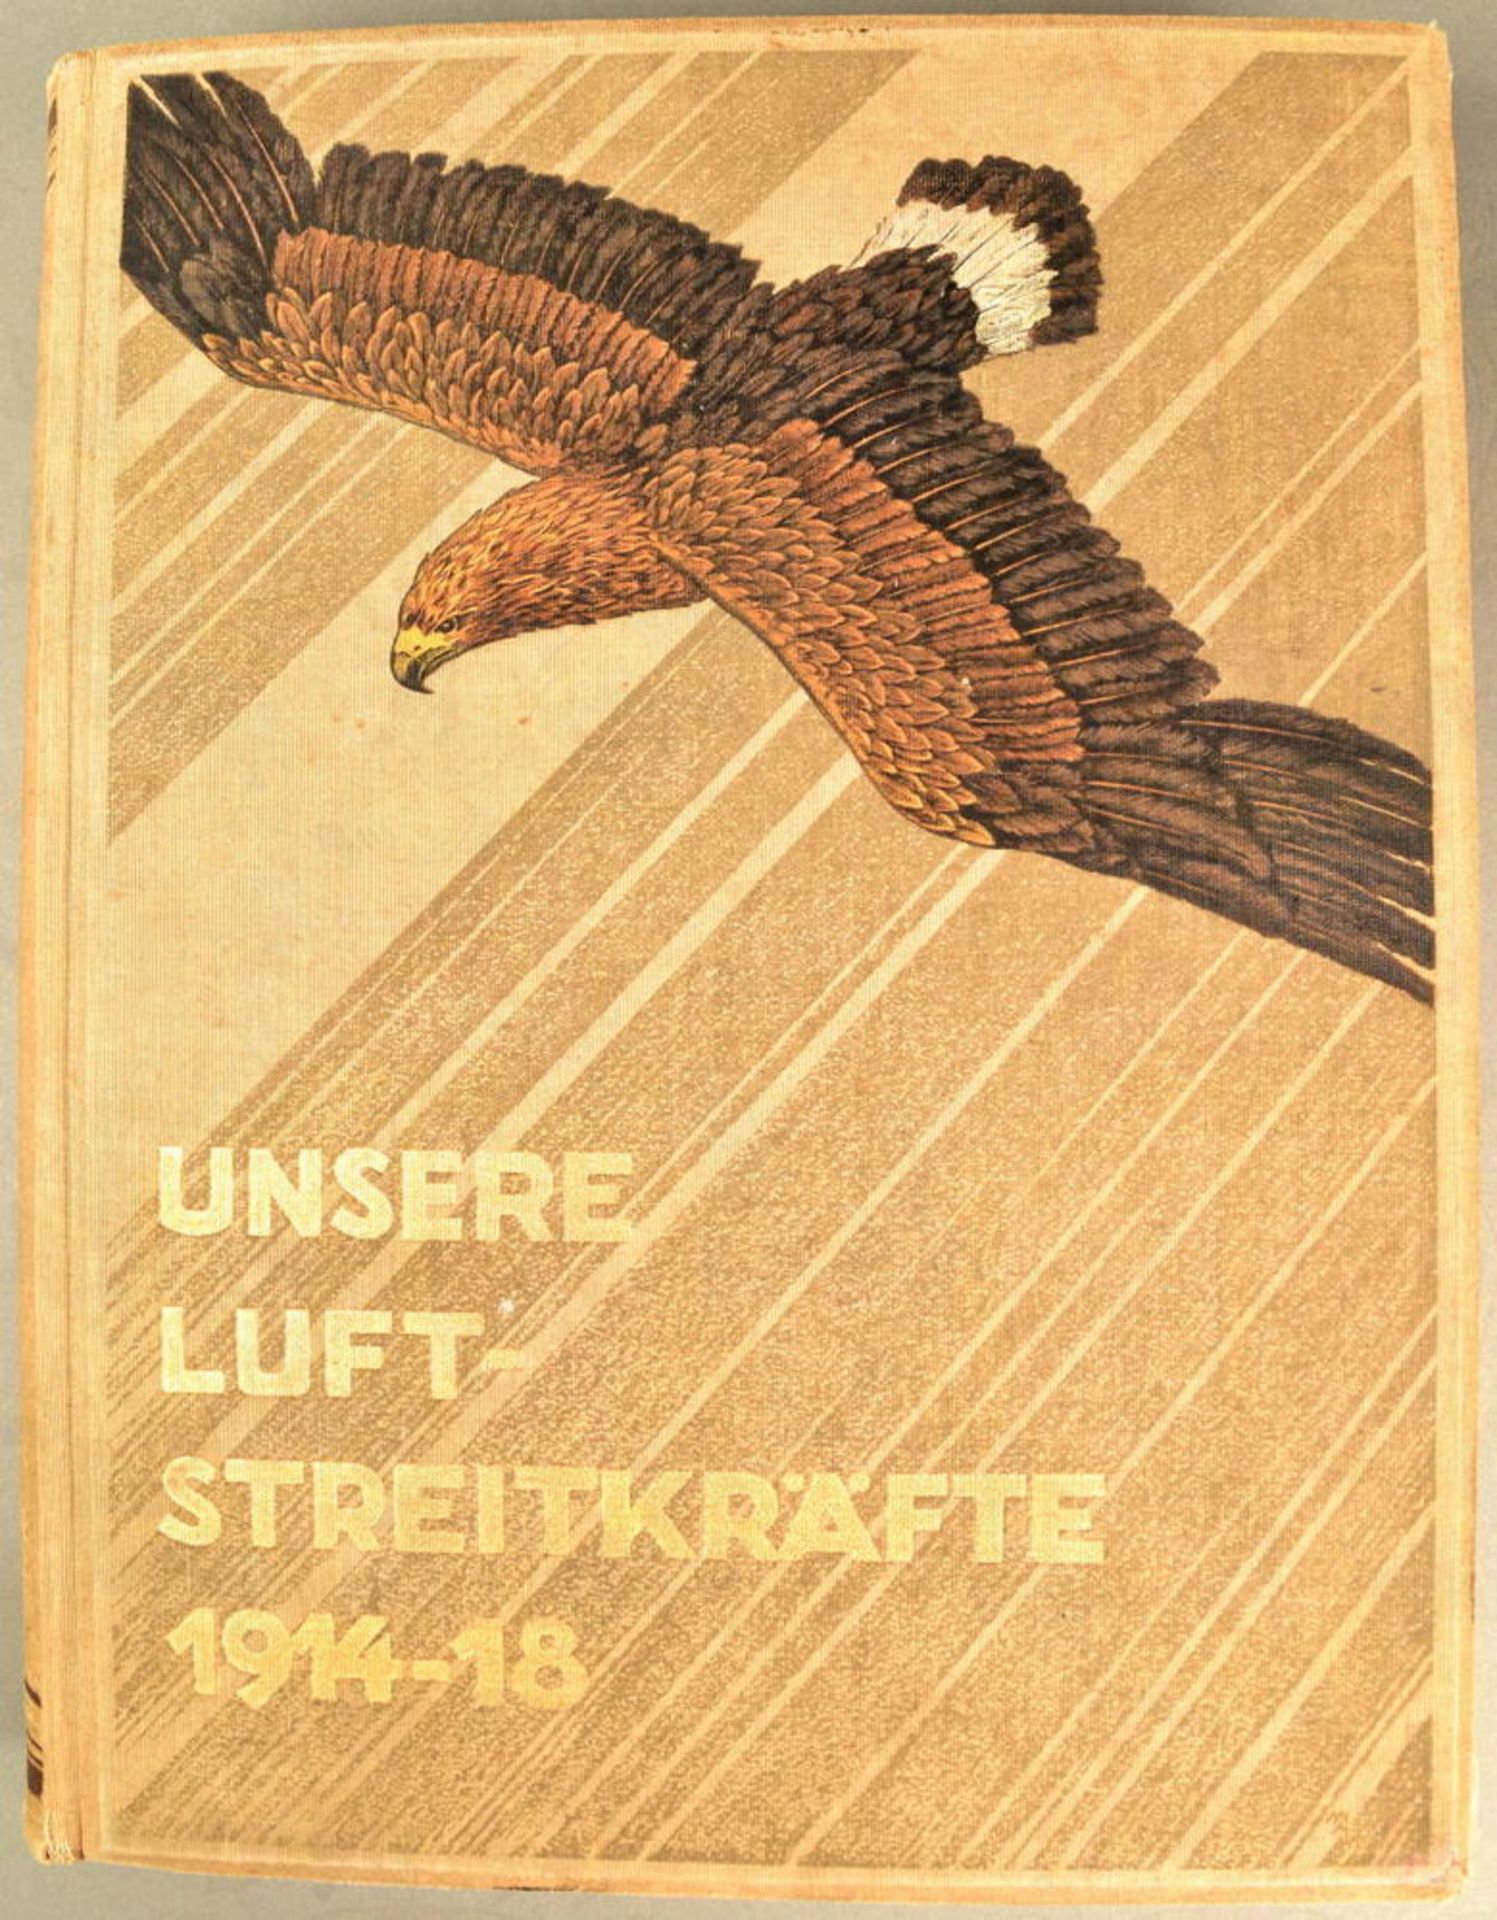 UNSERE LUFTSTREITKRÄFTE 1914-1918